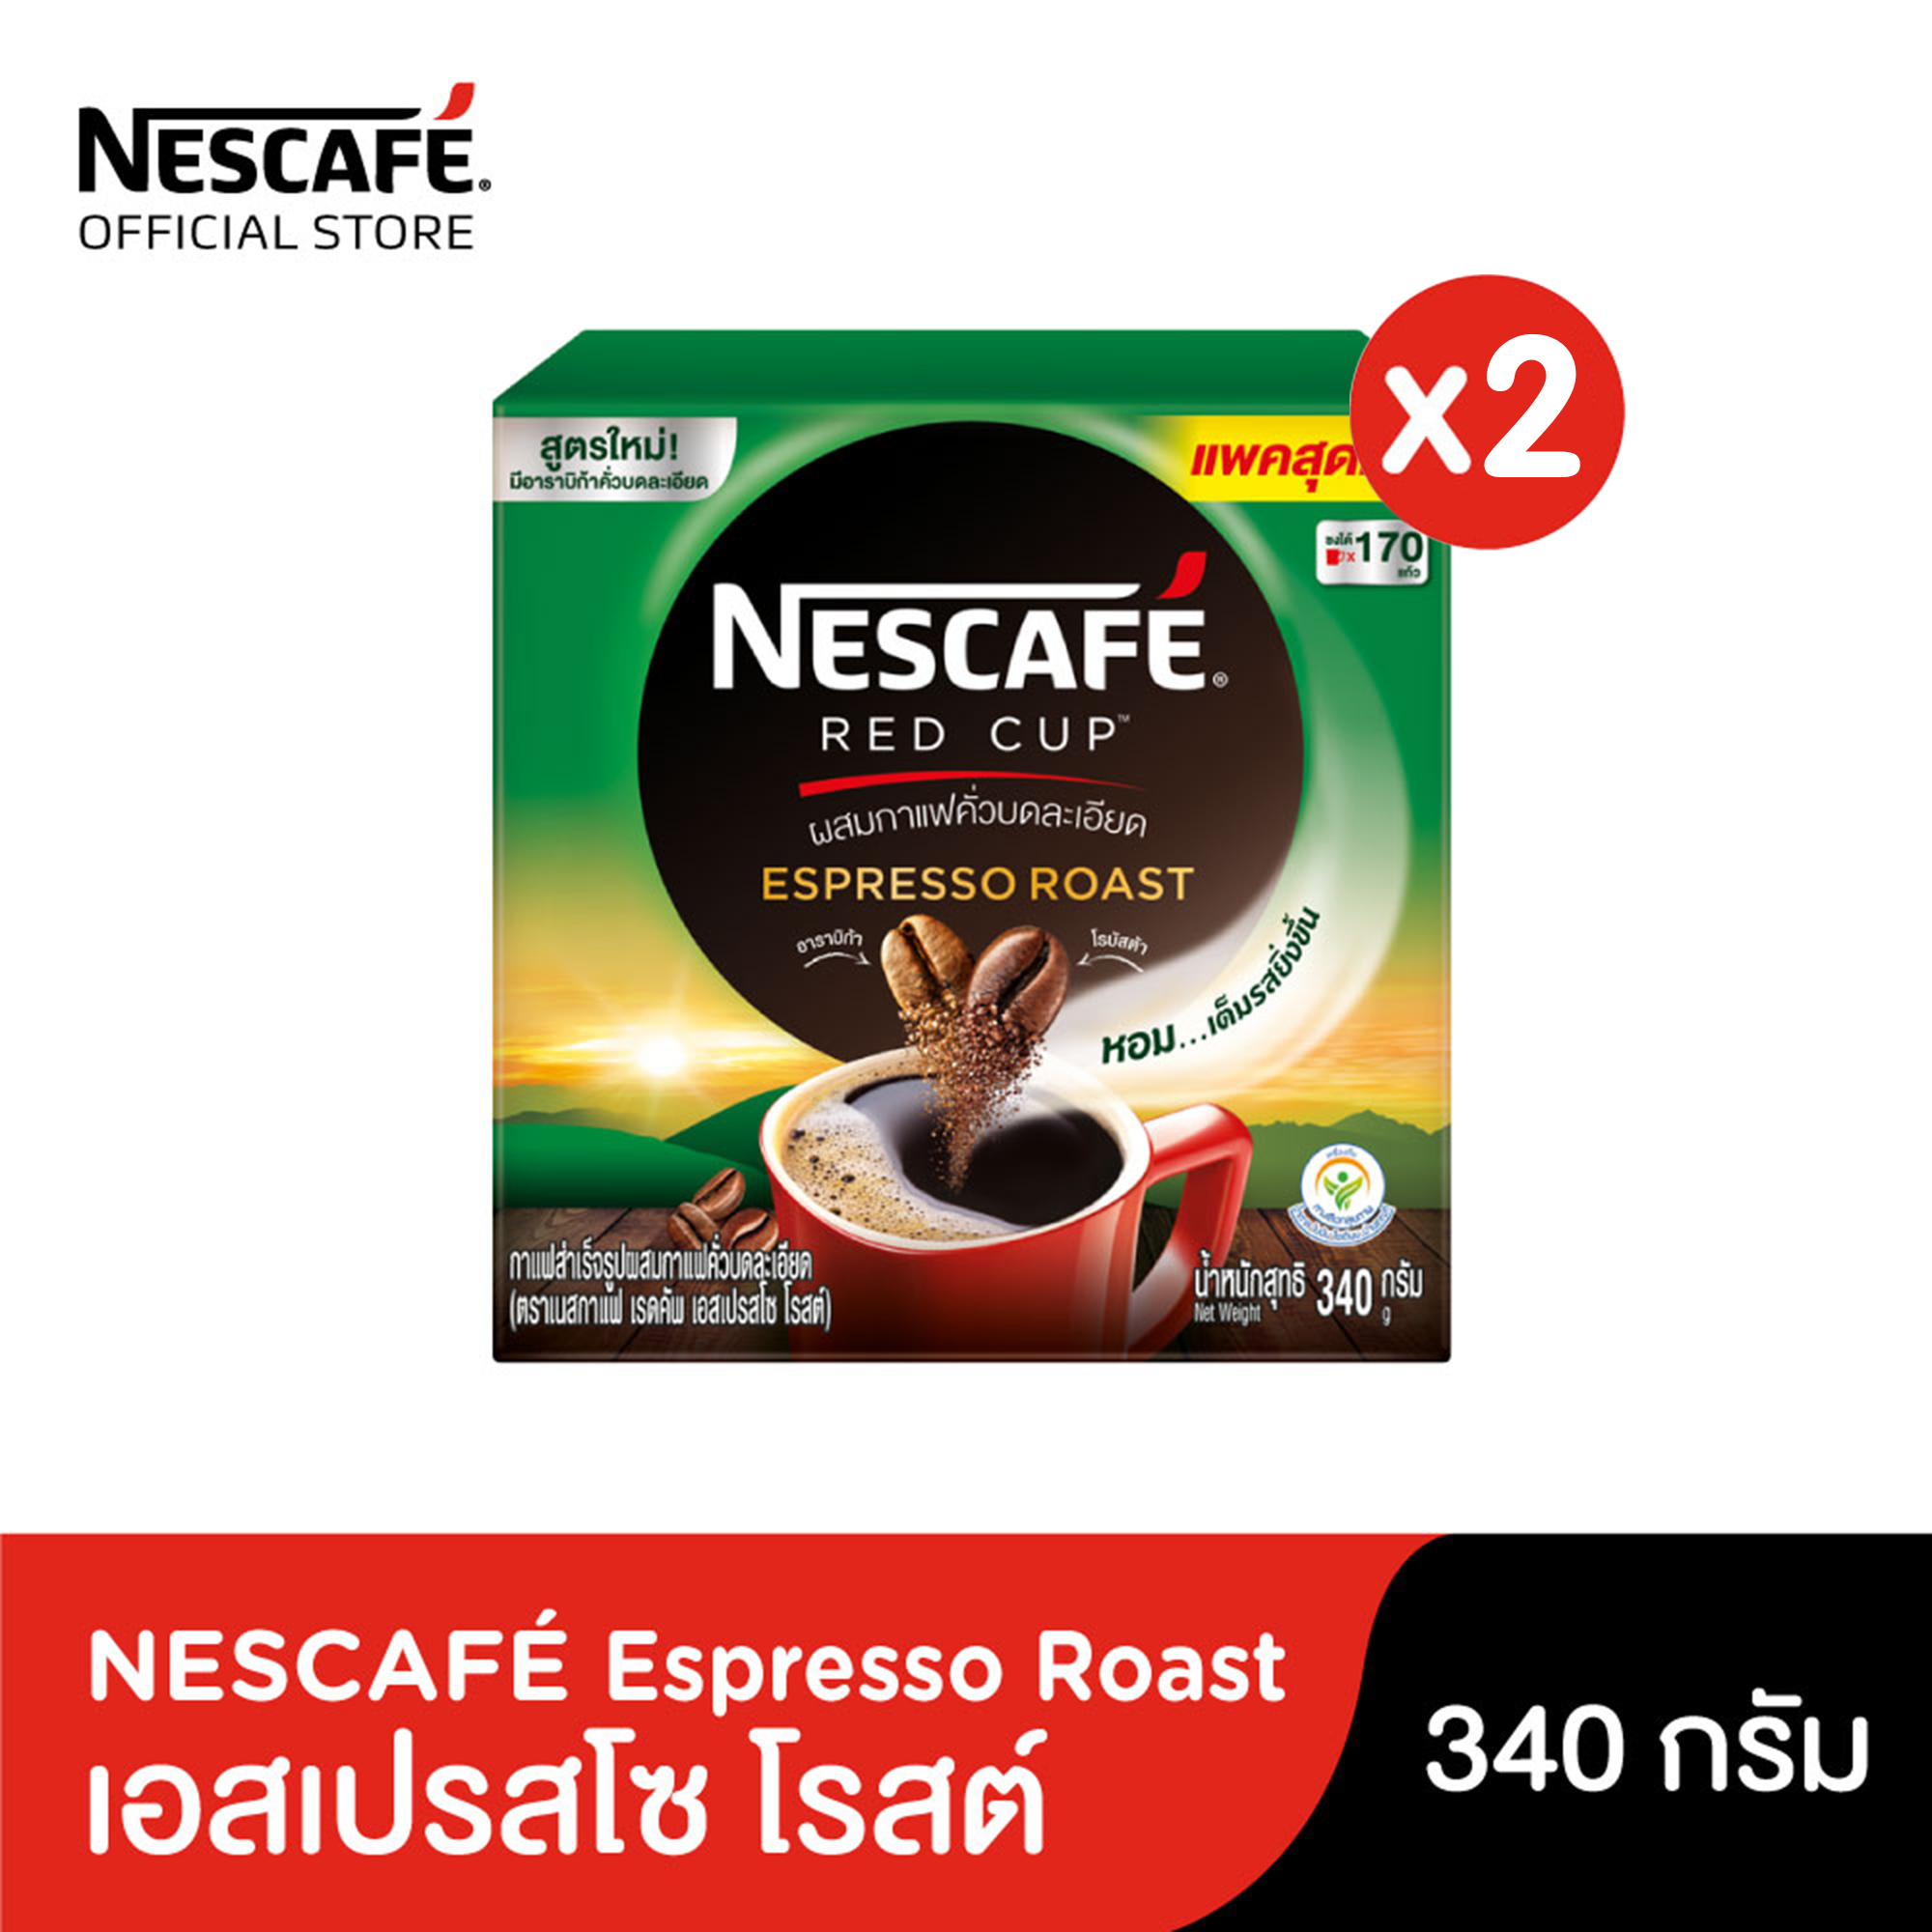 NESCAFE RED CUP เนสกาแฟ เรดคัw กาแฟสำเร็จรูป เอสเพรสโซ โรสต์ 340 กรัม (2 กล่อง)